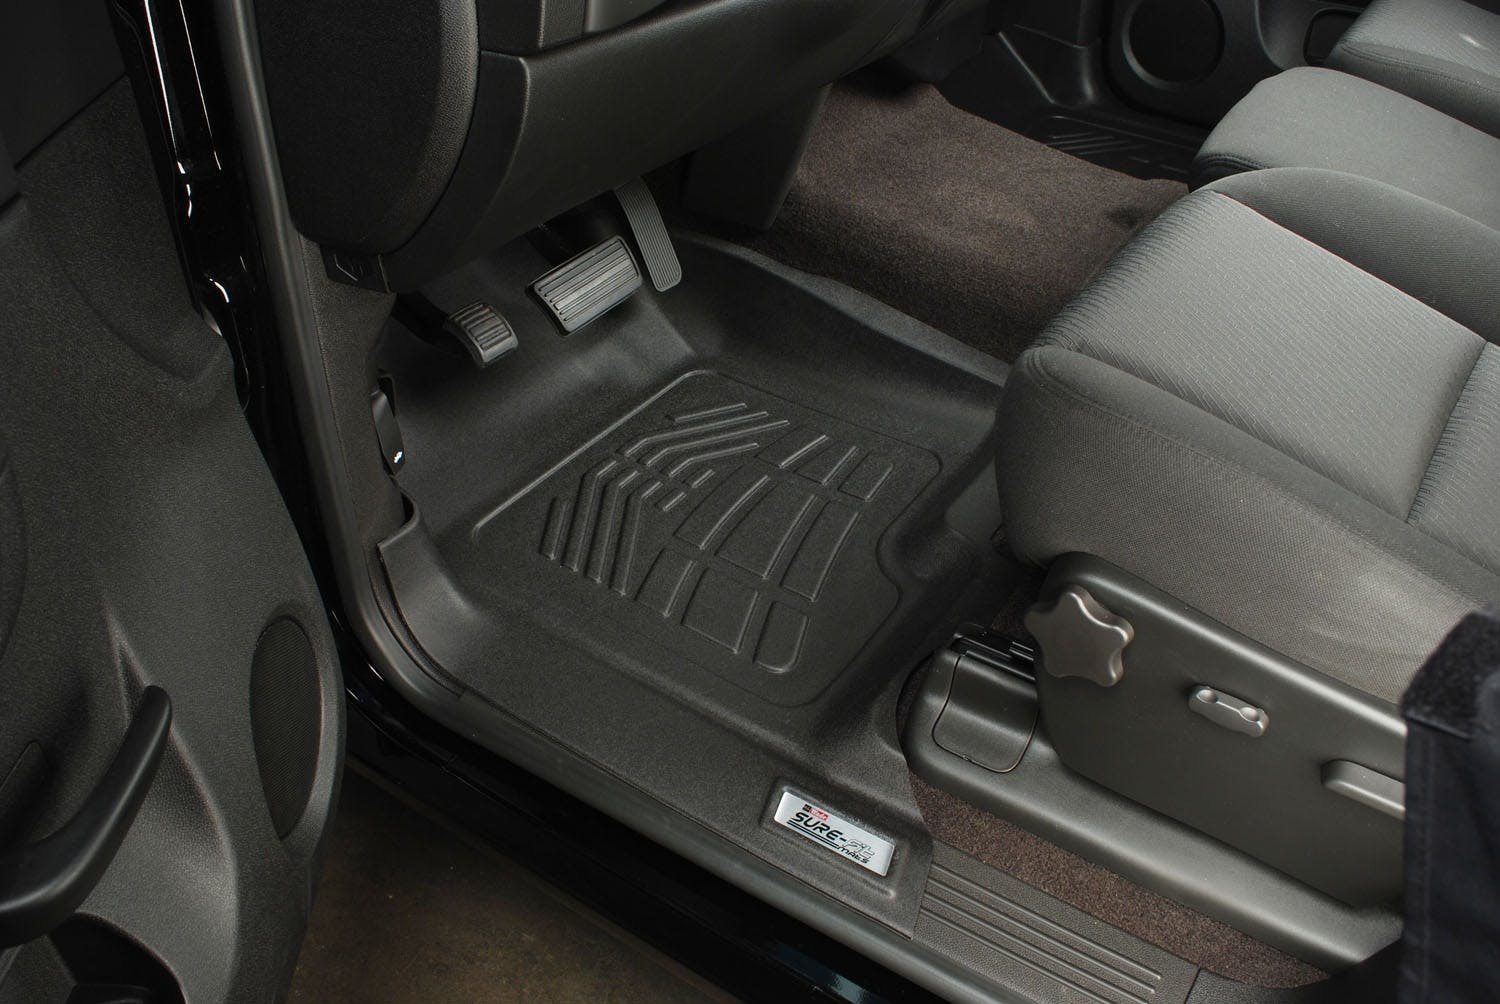 Westin Automotive 72-110001 Sure Fit Floor Liners Front Black